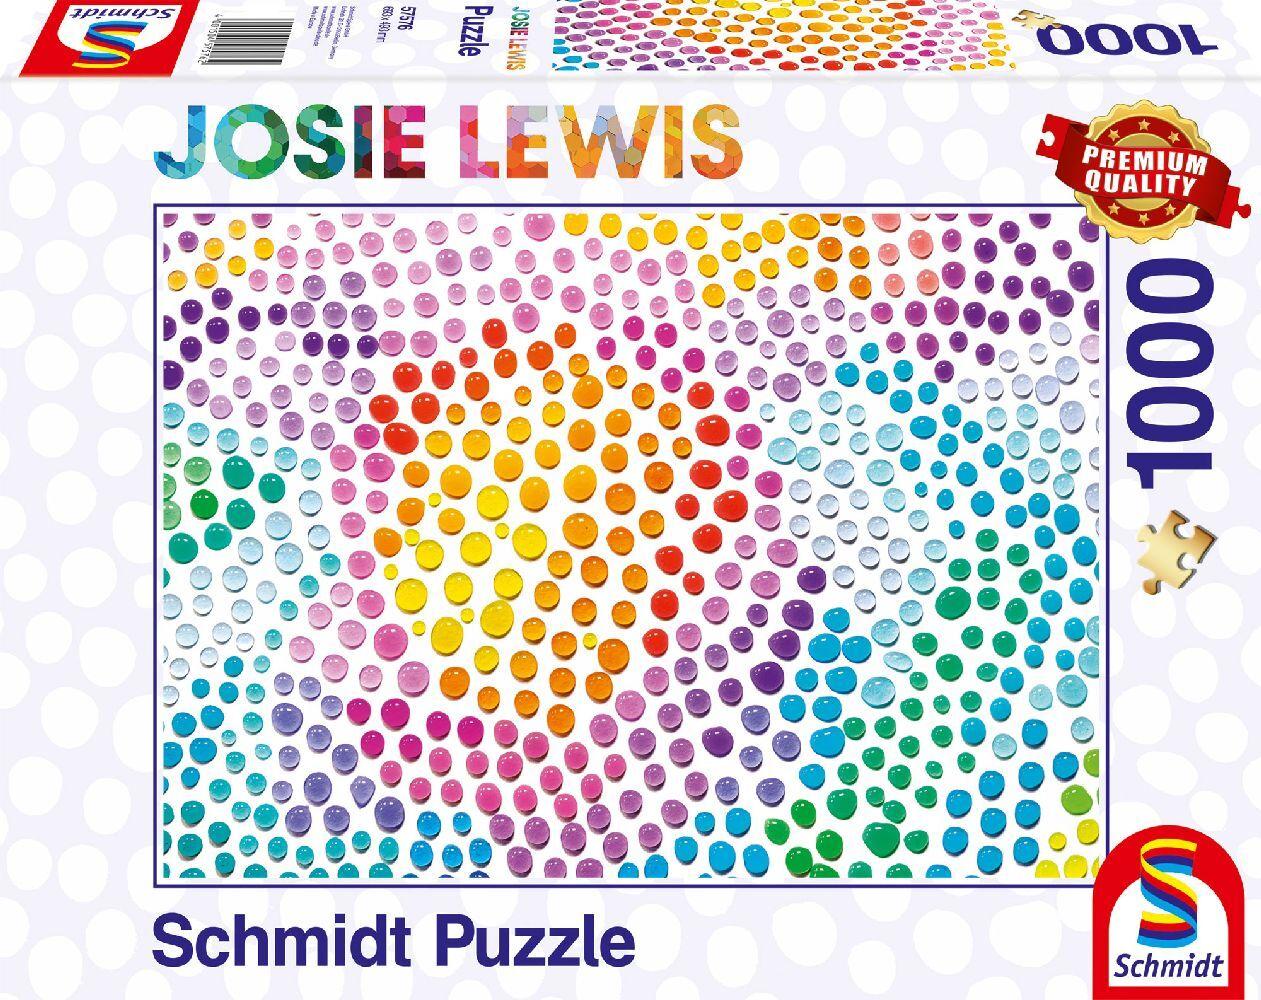 Schmidt Spiele - Josie Lewis - Farbige Seifenblasen, 1000 Teile